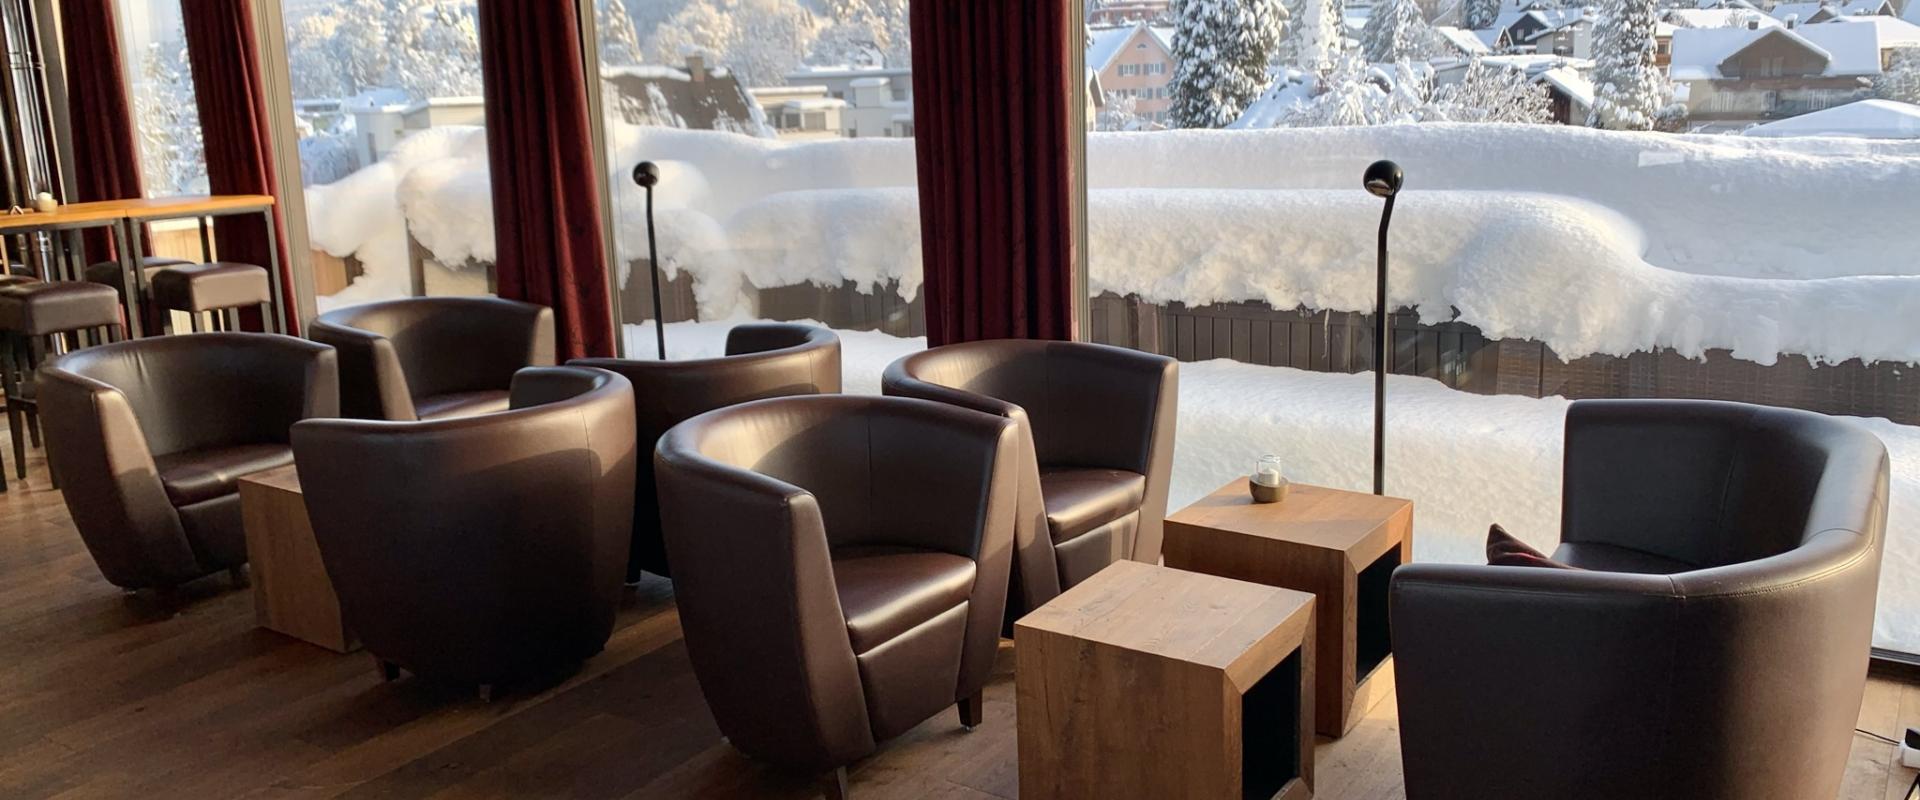 Lounge im Hotel Sonne im Winter